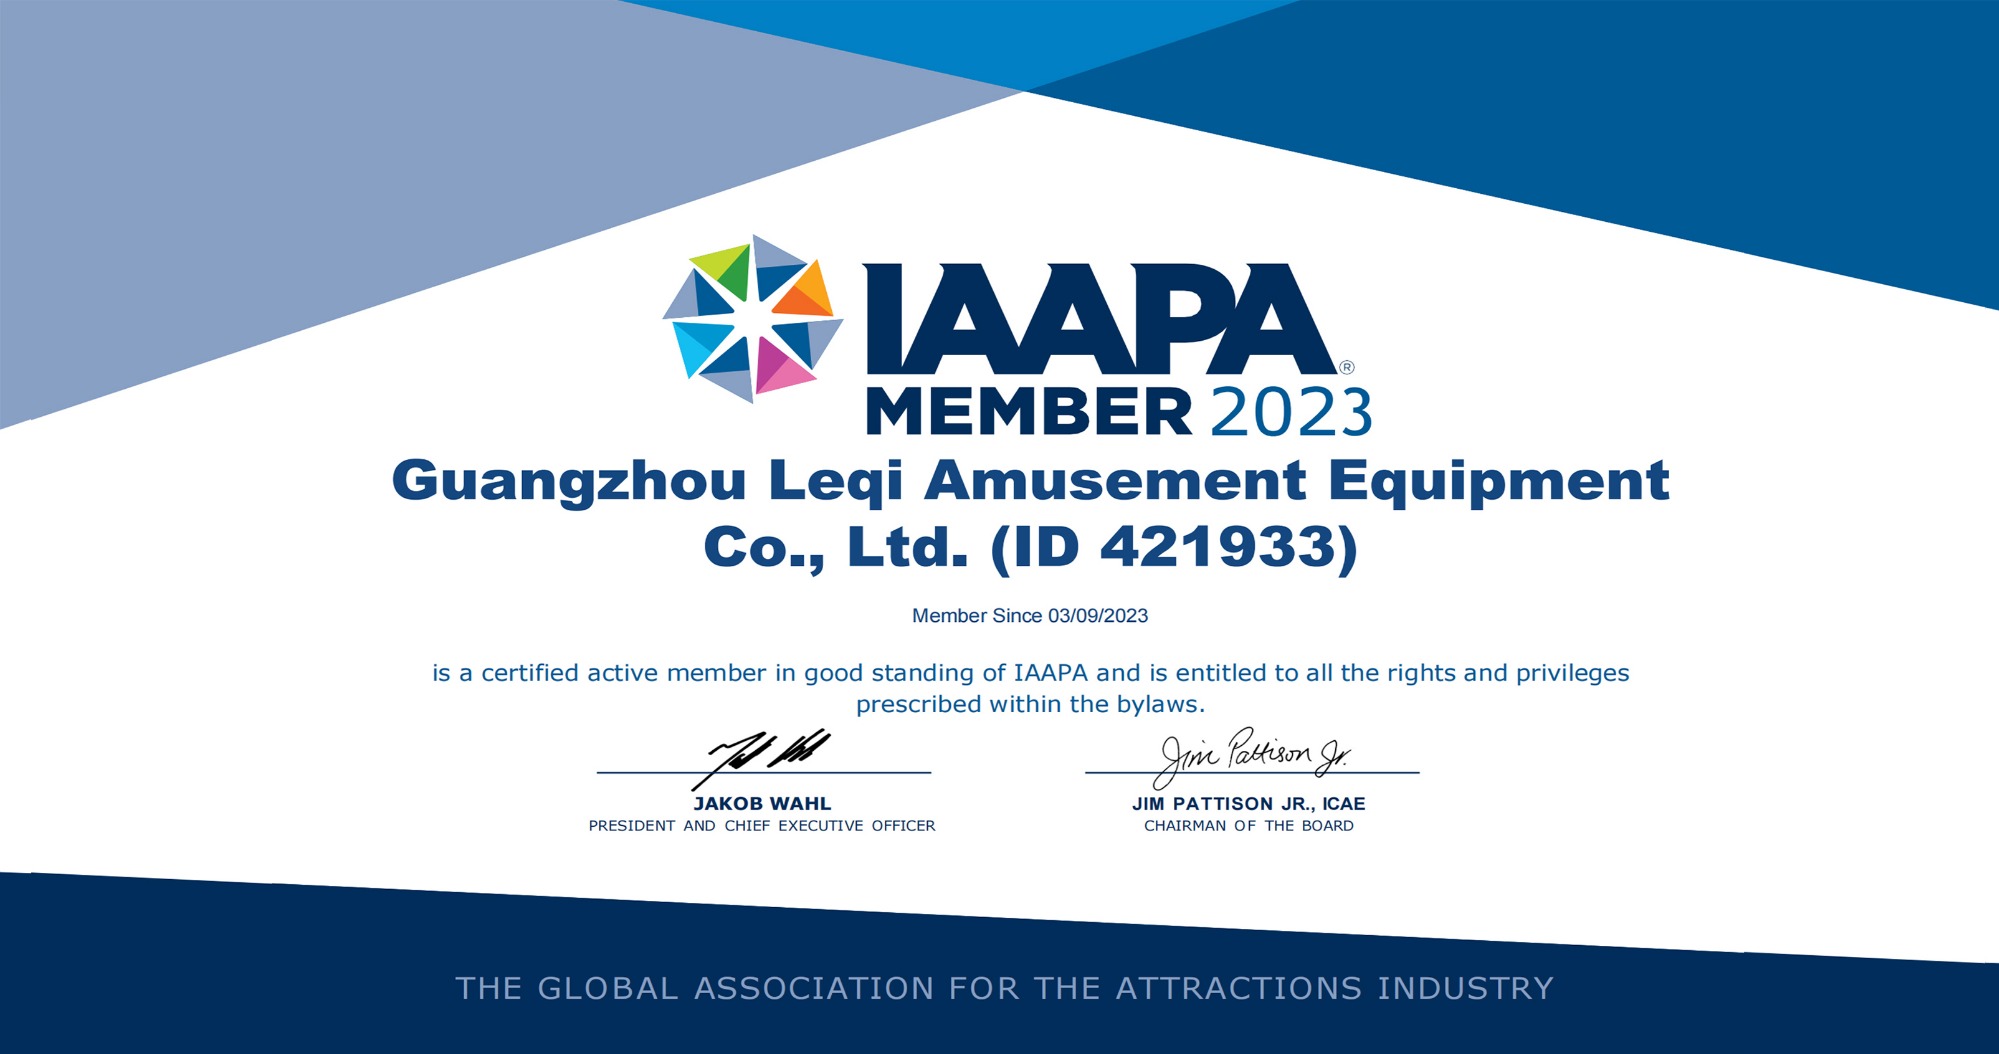 Guangzhou Leqi Amusement Equipment Co., LTD Obtained IAAPA Membership Certificate On 03/09/2023